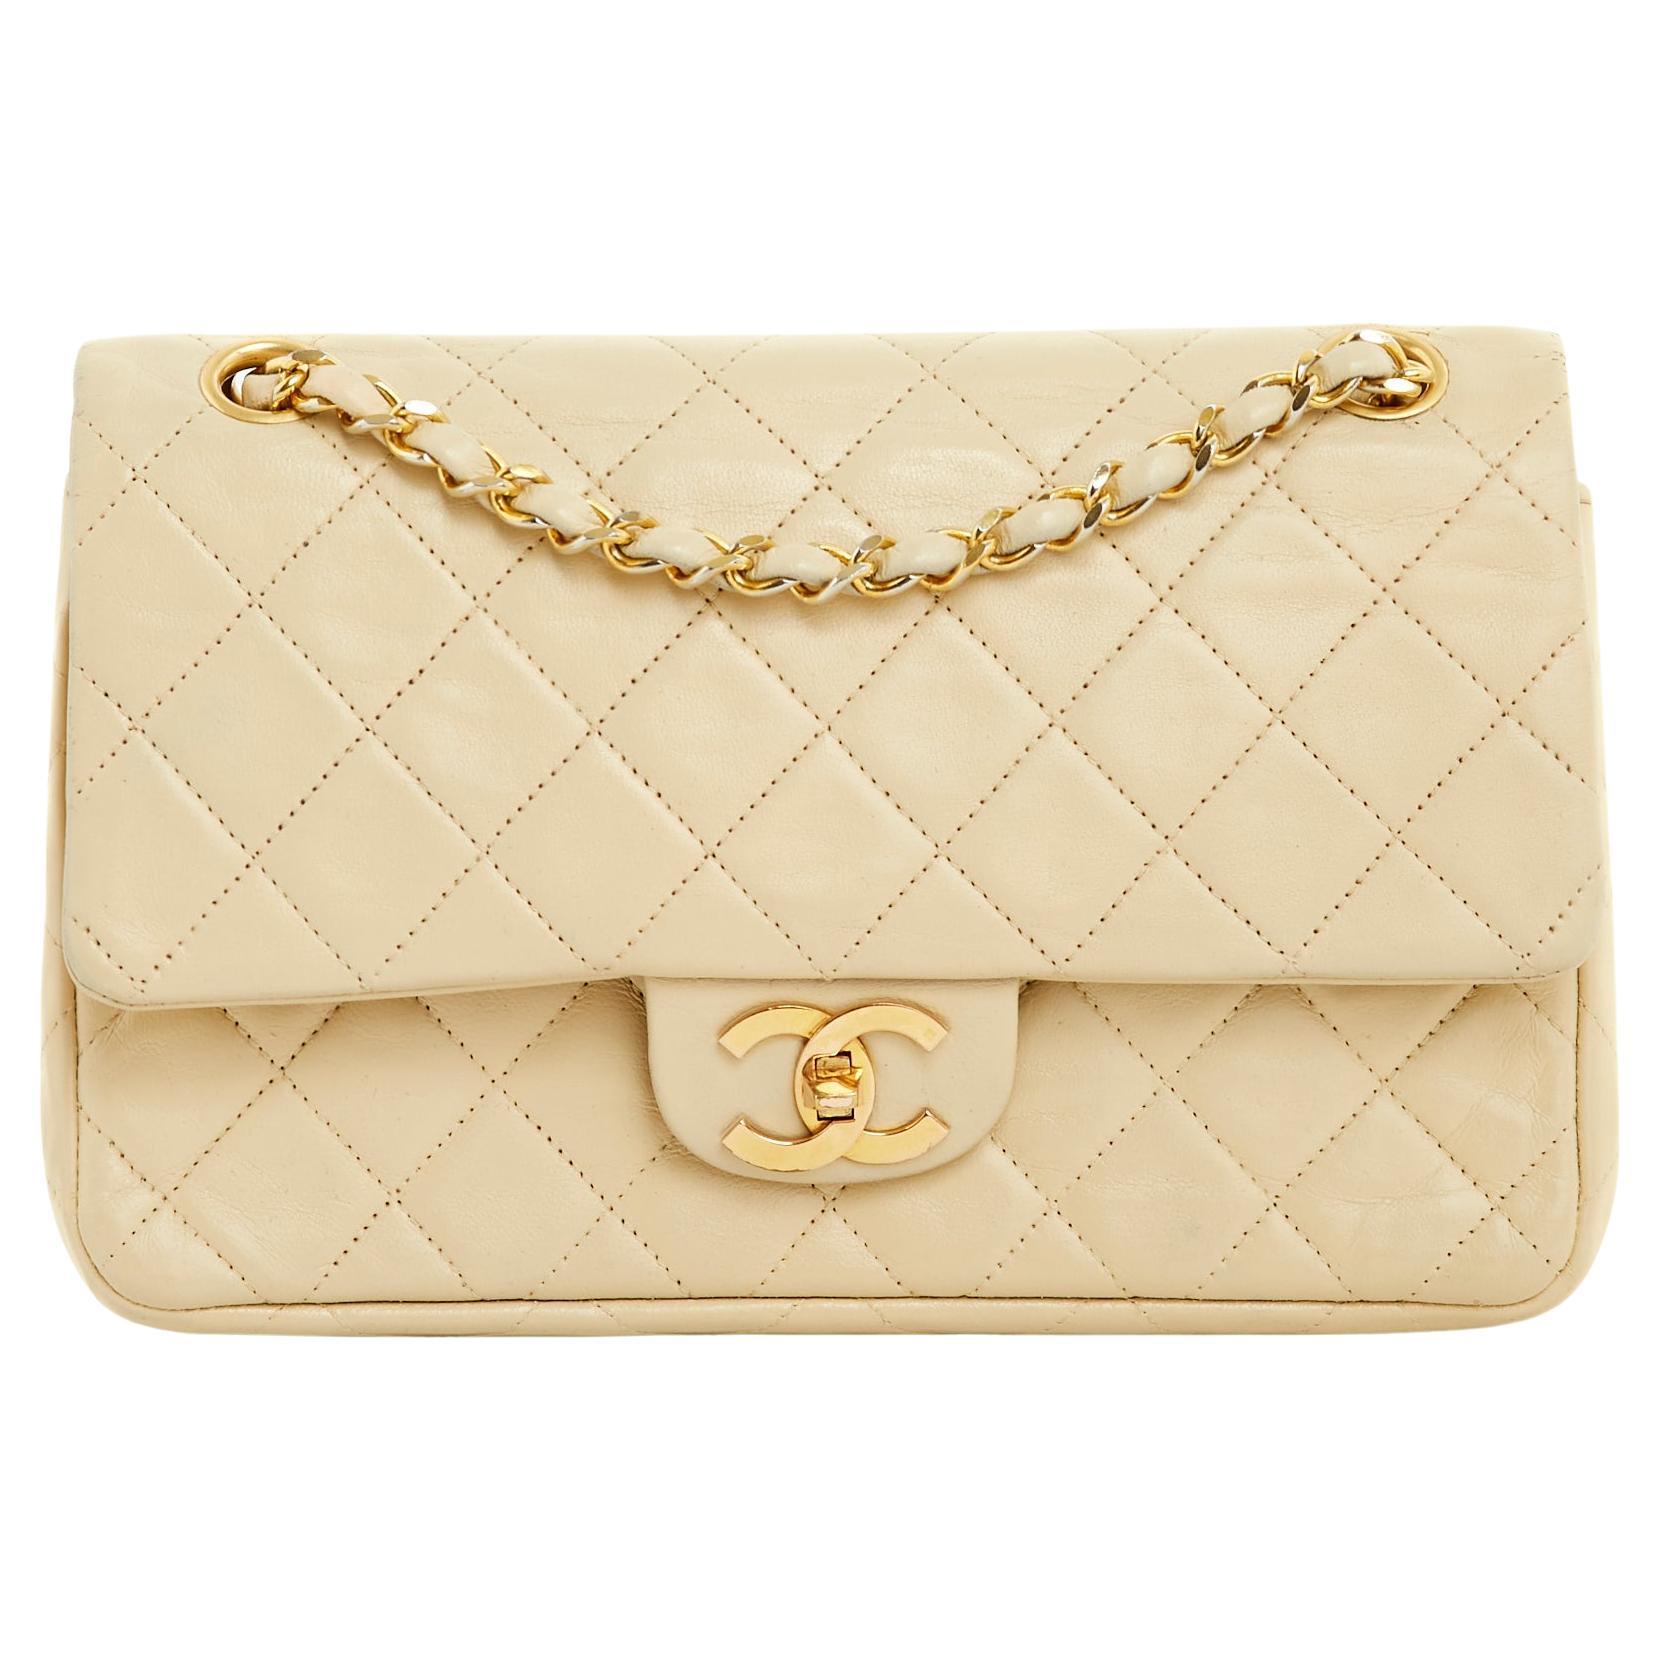 Chanel Sac Classique Timeless Bag double flap vanilla vintage